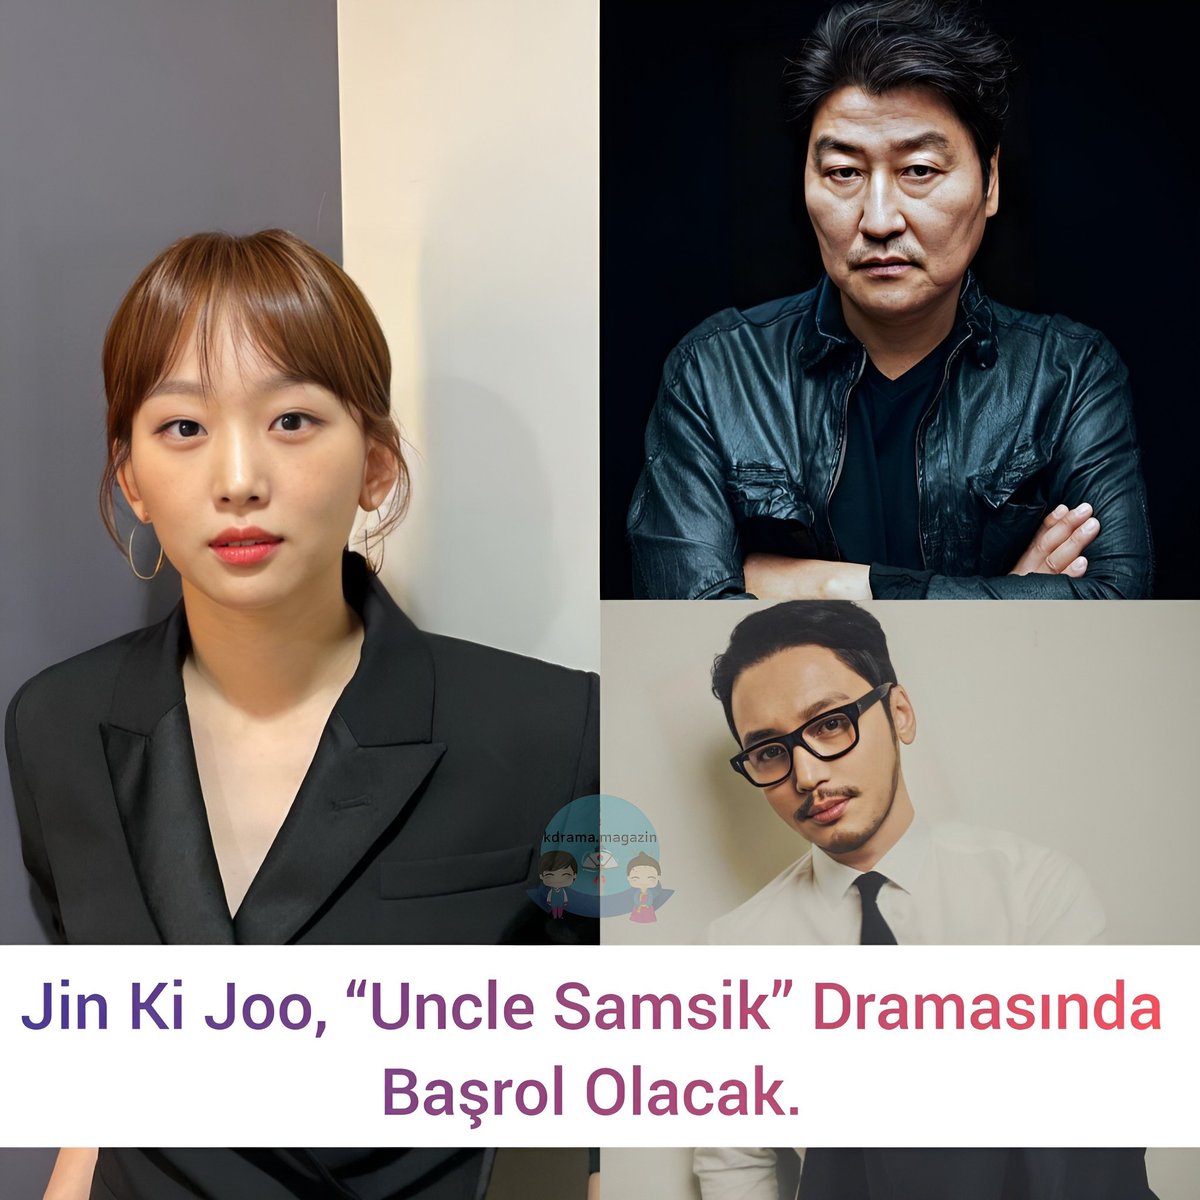 #JinKiJoo, “#UncleSamsik” Dramasında Başrol Olacak. 

“Uncle Samsik” 10 bölümlük bir dizi olacak ve şu anda yayın programı tartışılıyor. Çekimler yakında başlayacak.